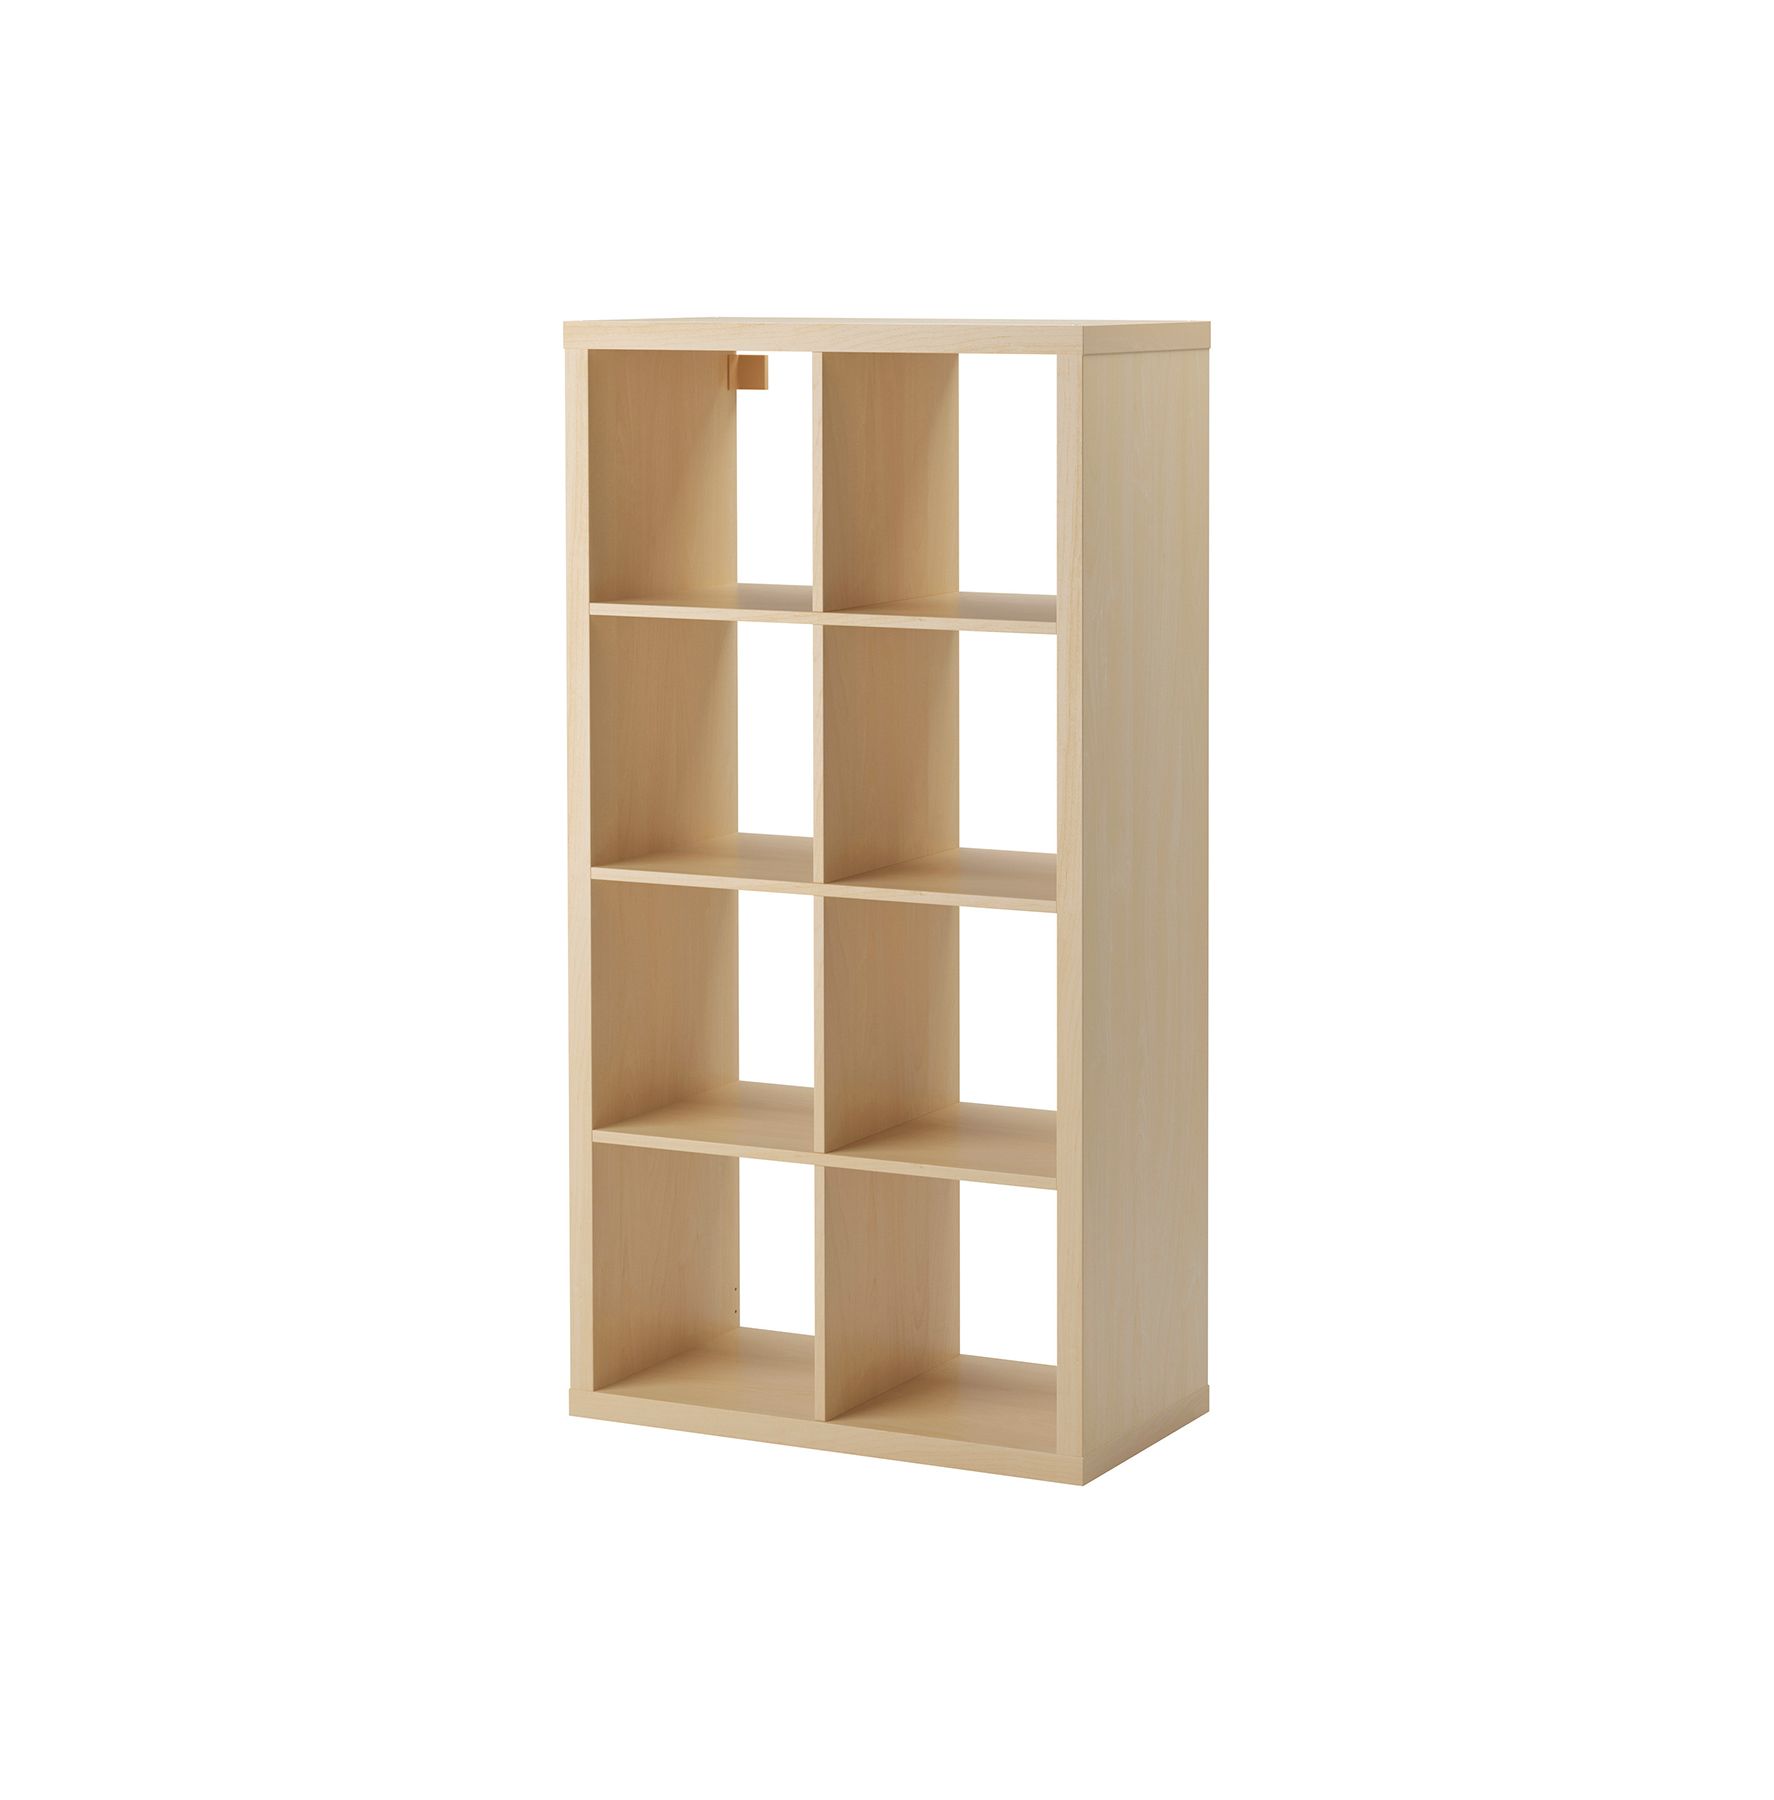 Update: IKEA Artikel sind bei Amazon Prime verfügbar (über Drittanbieter)